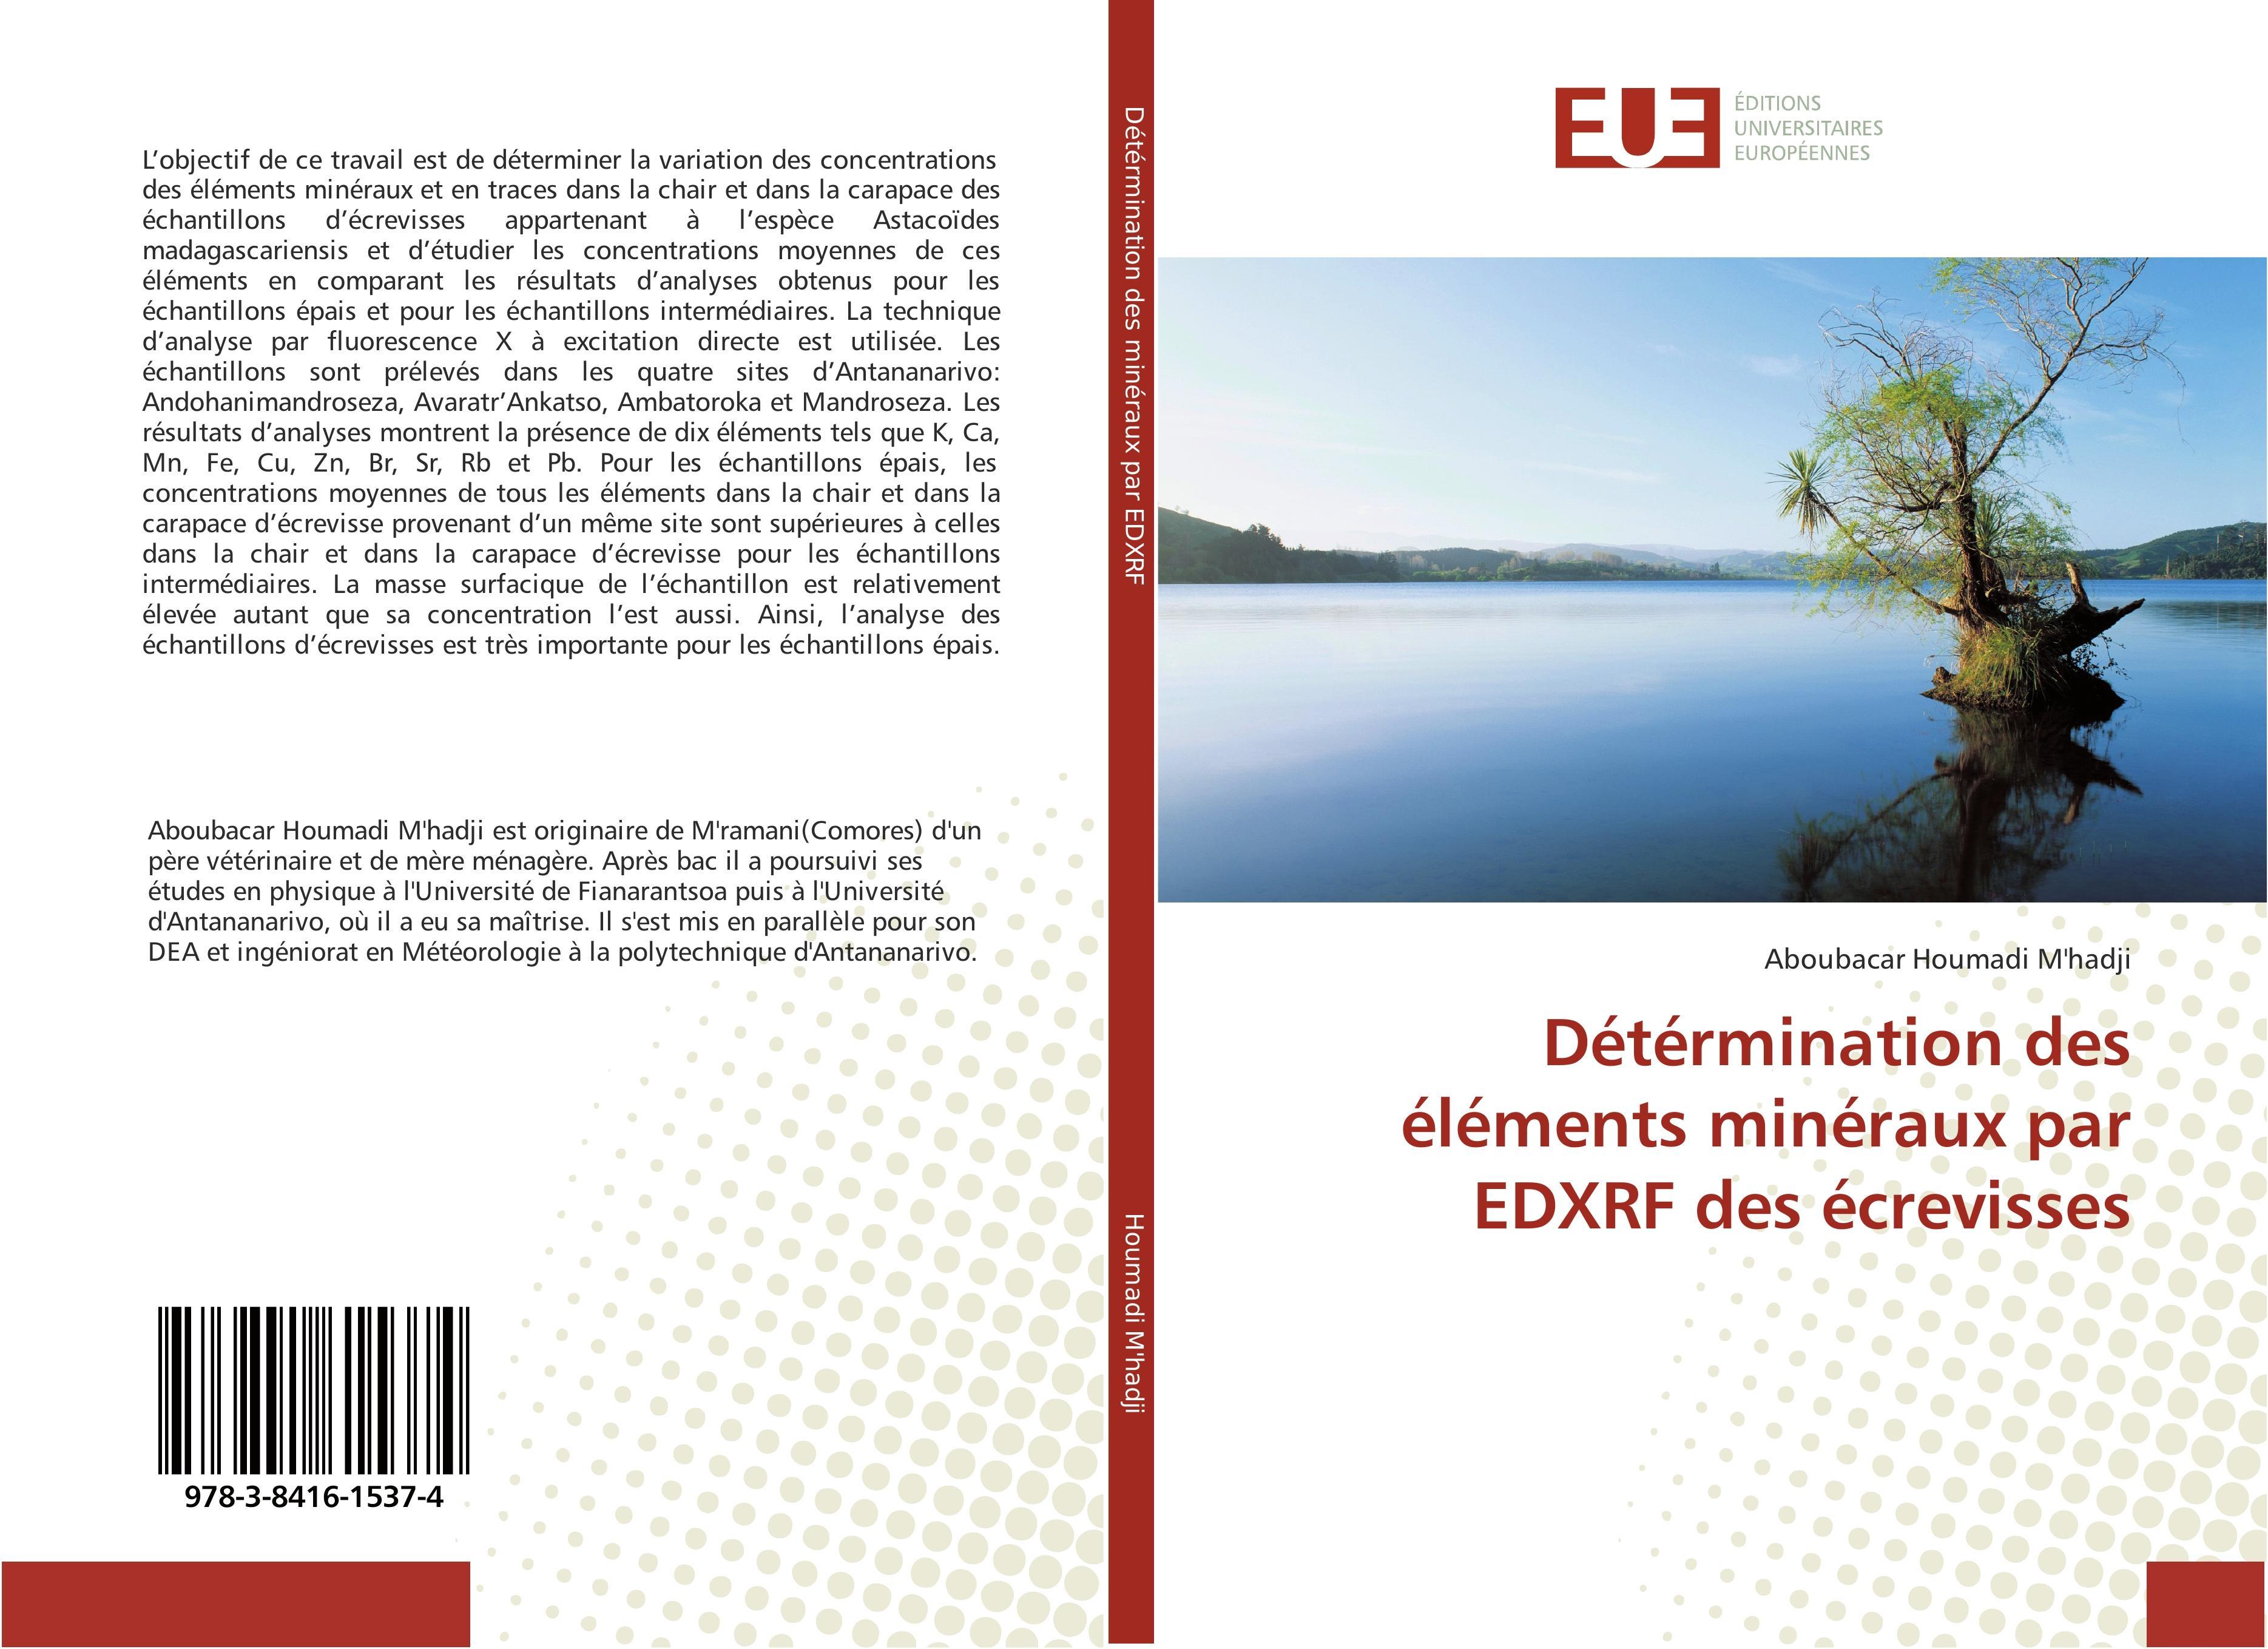 Détérmination des éléments minéraux par EDXRF des écrevisses Aboubacar Houm ... - Picture 1 of 1